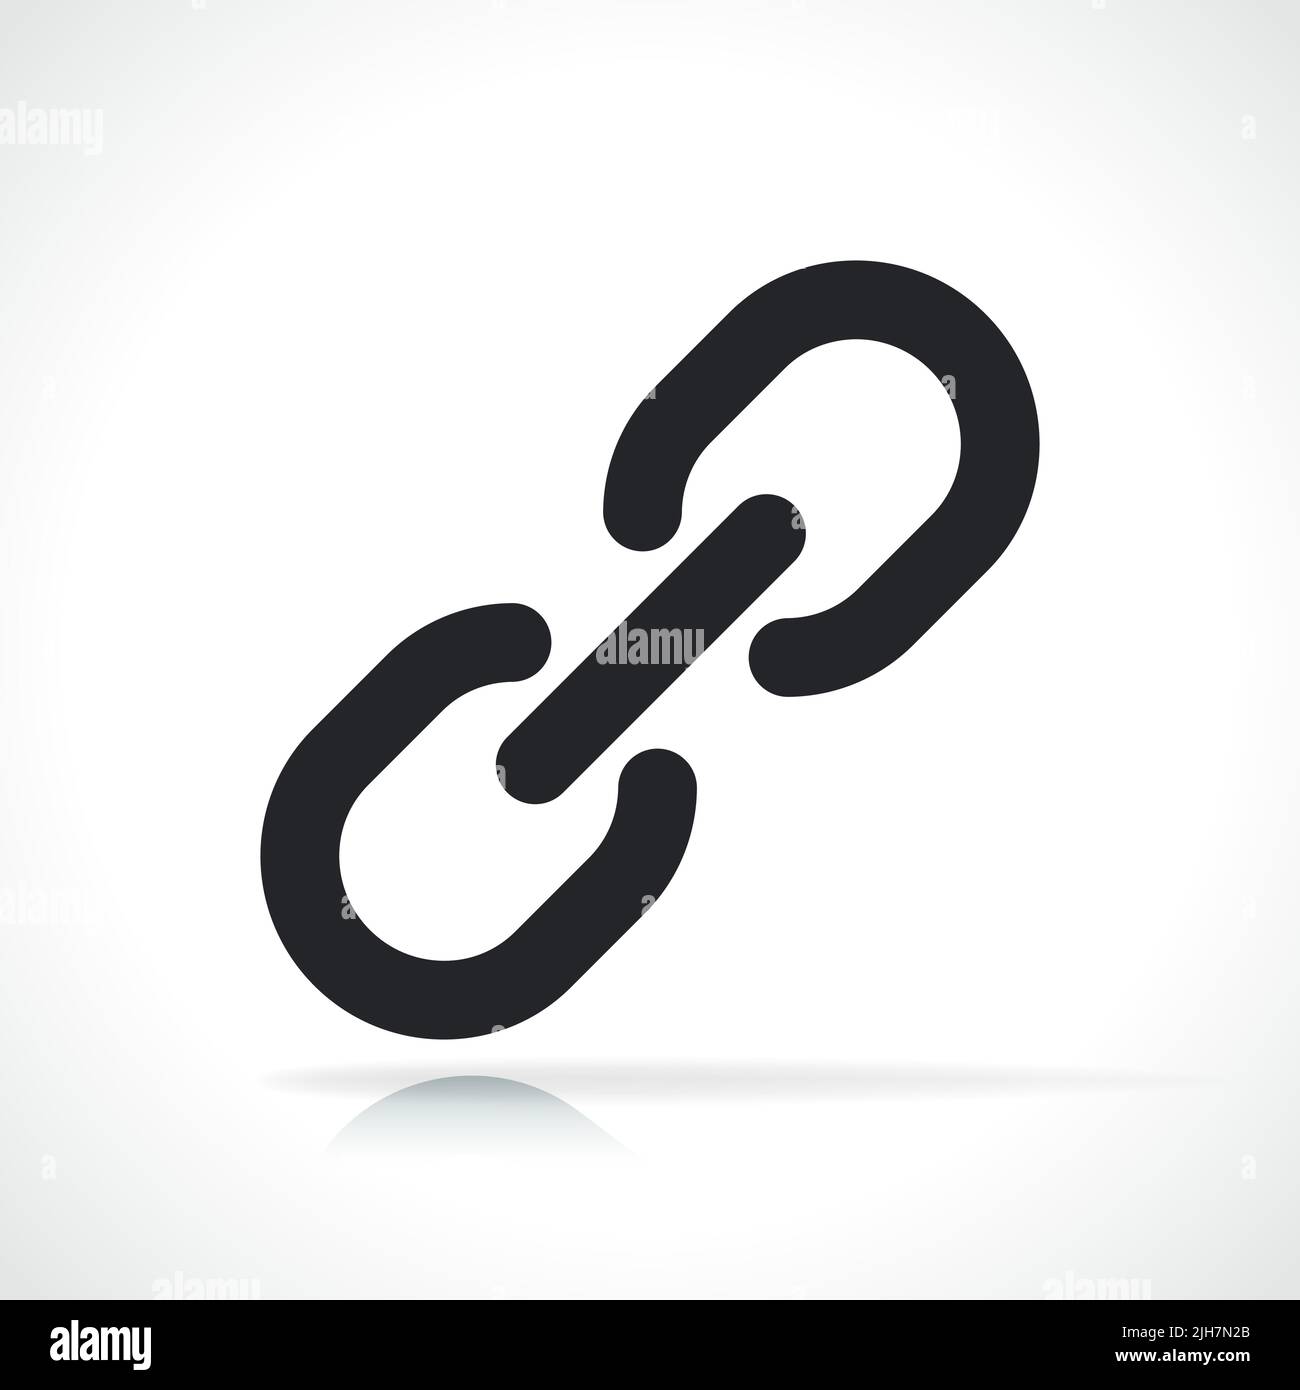 ilustración aislada de un icono negro de cadena o eslabón Ilustración del Vector